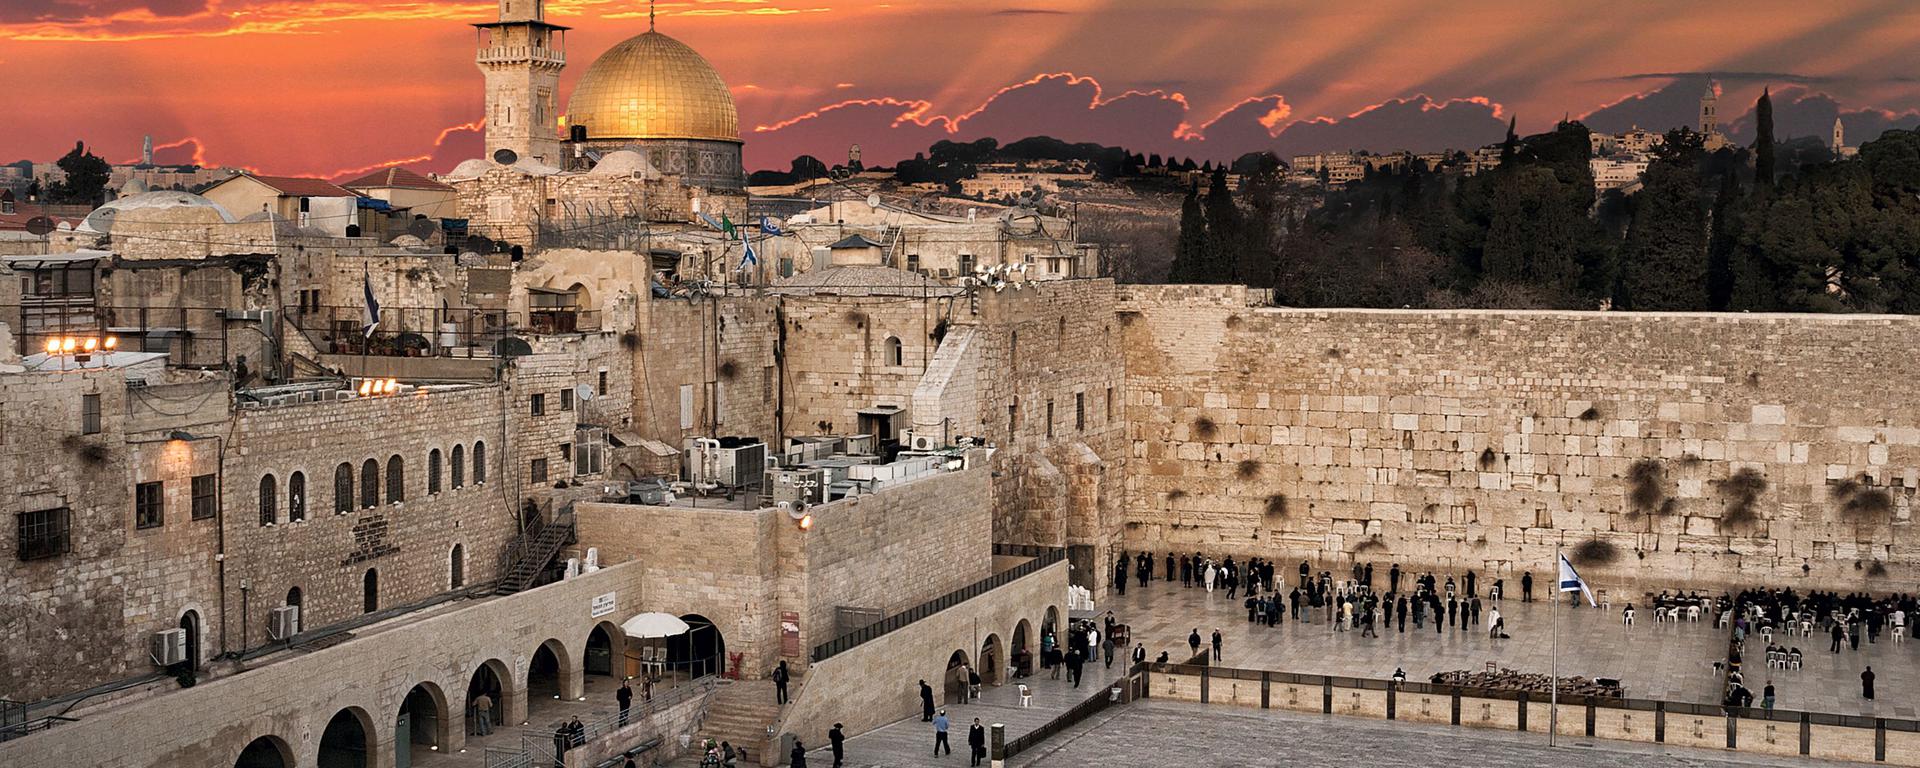 Jerusalén, Belén, el Mar Muerto y más: una guía para aprovechar al máximo tu próximo viaje a Israel